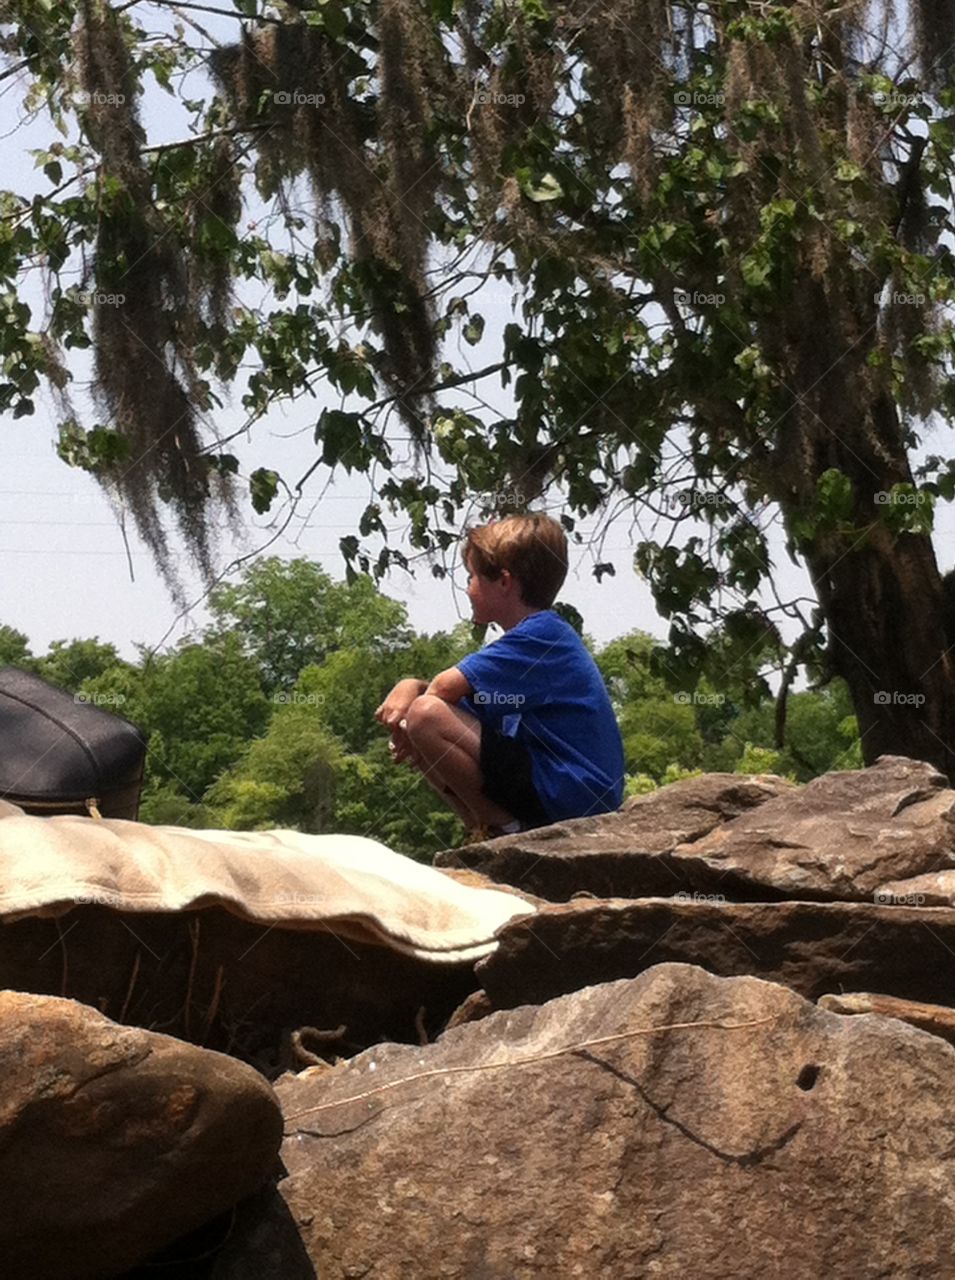 Child enjoying nature